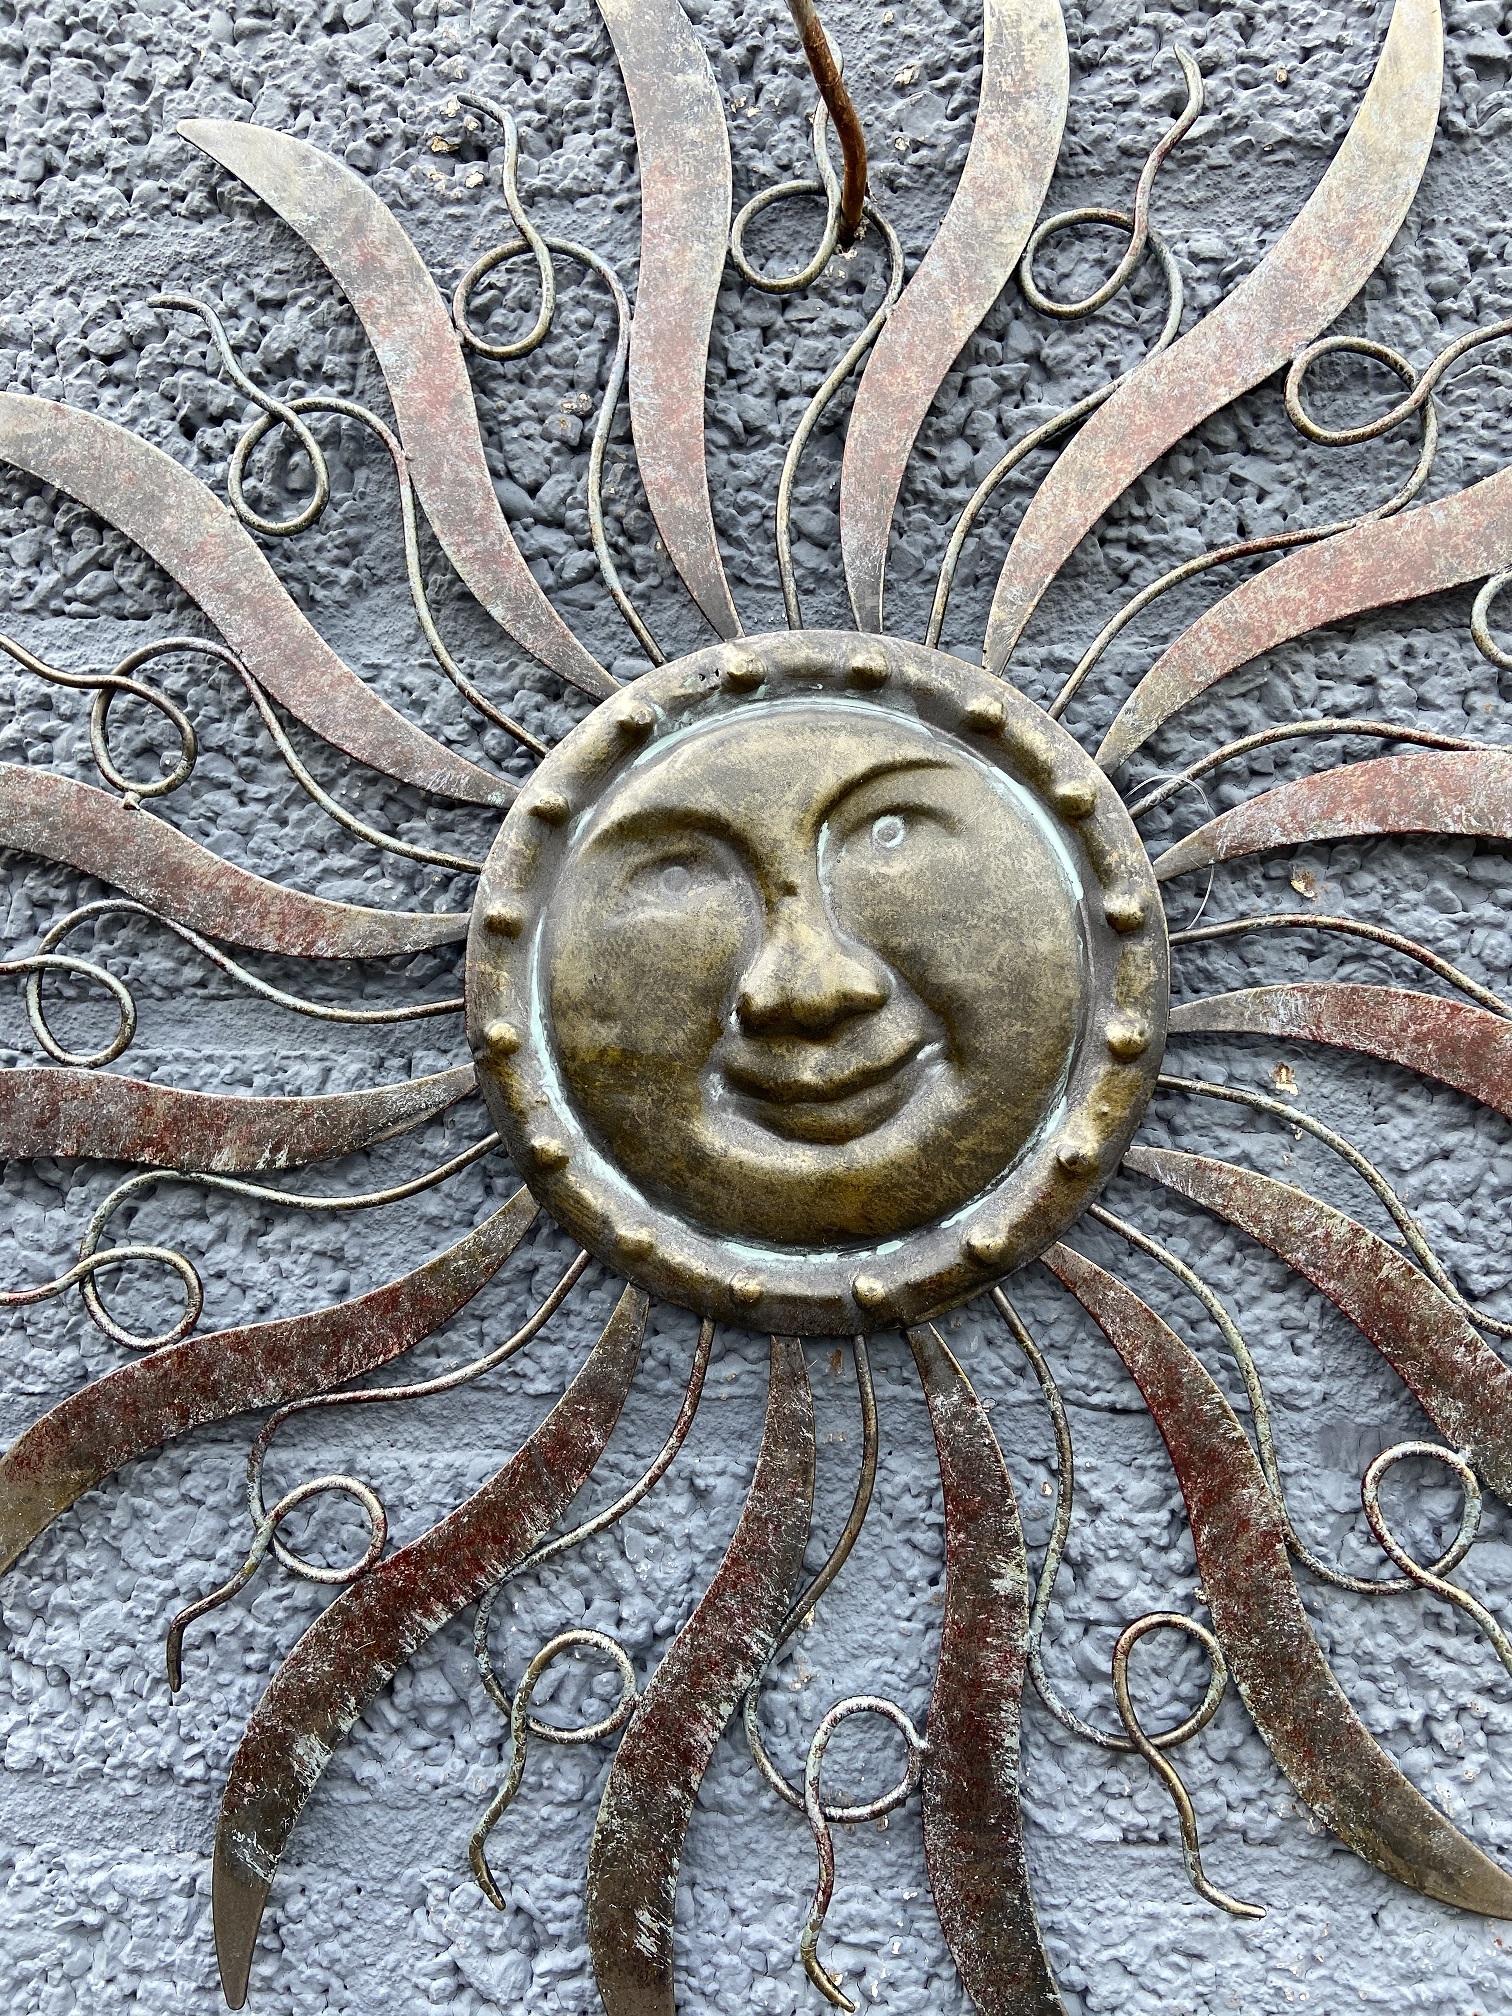 Schöne Wand Ornament Metall der Sonne